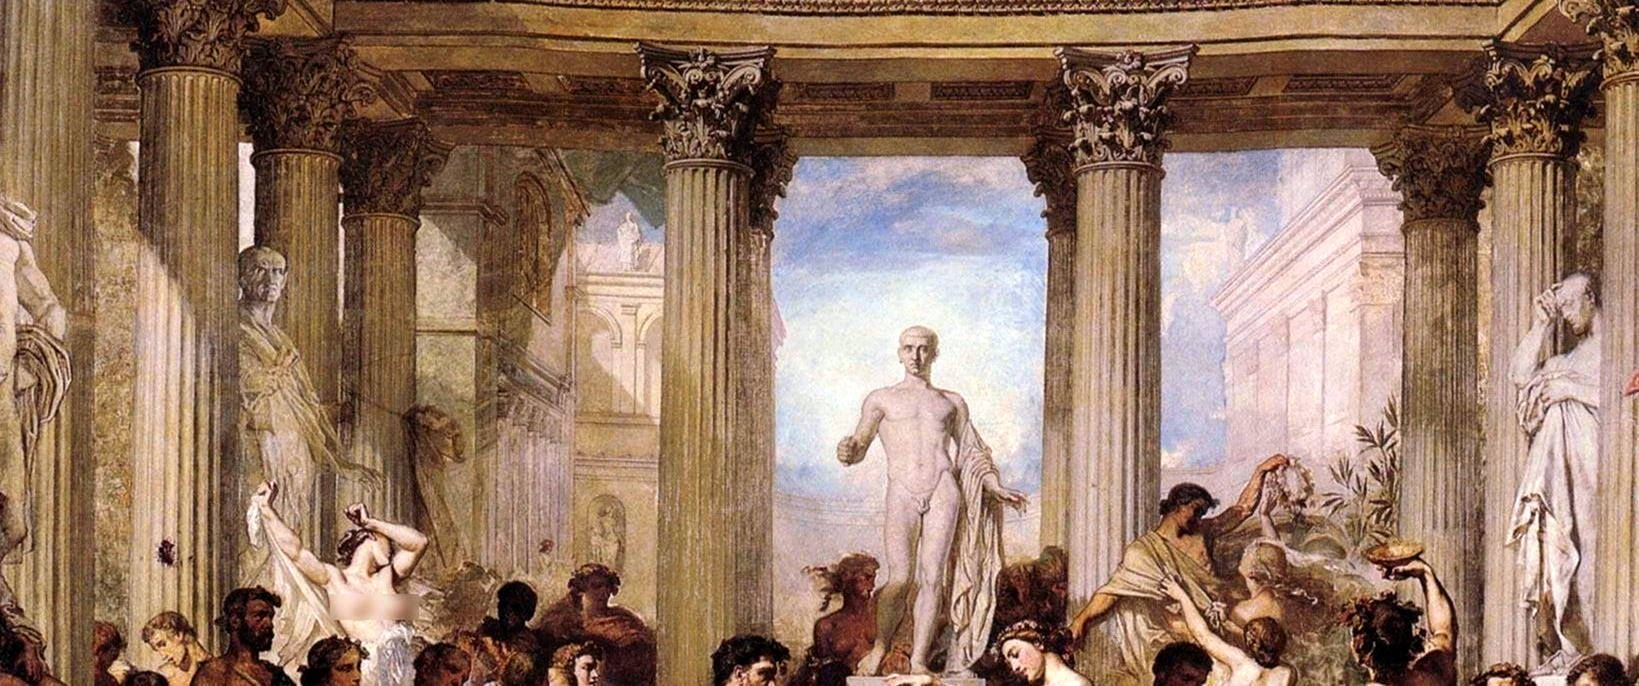 Картины античности философы